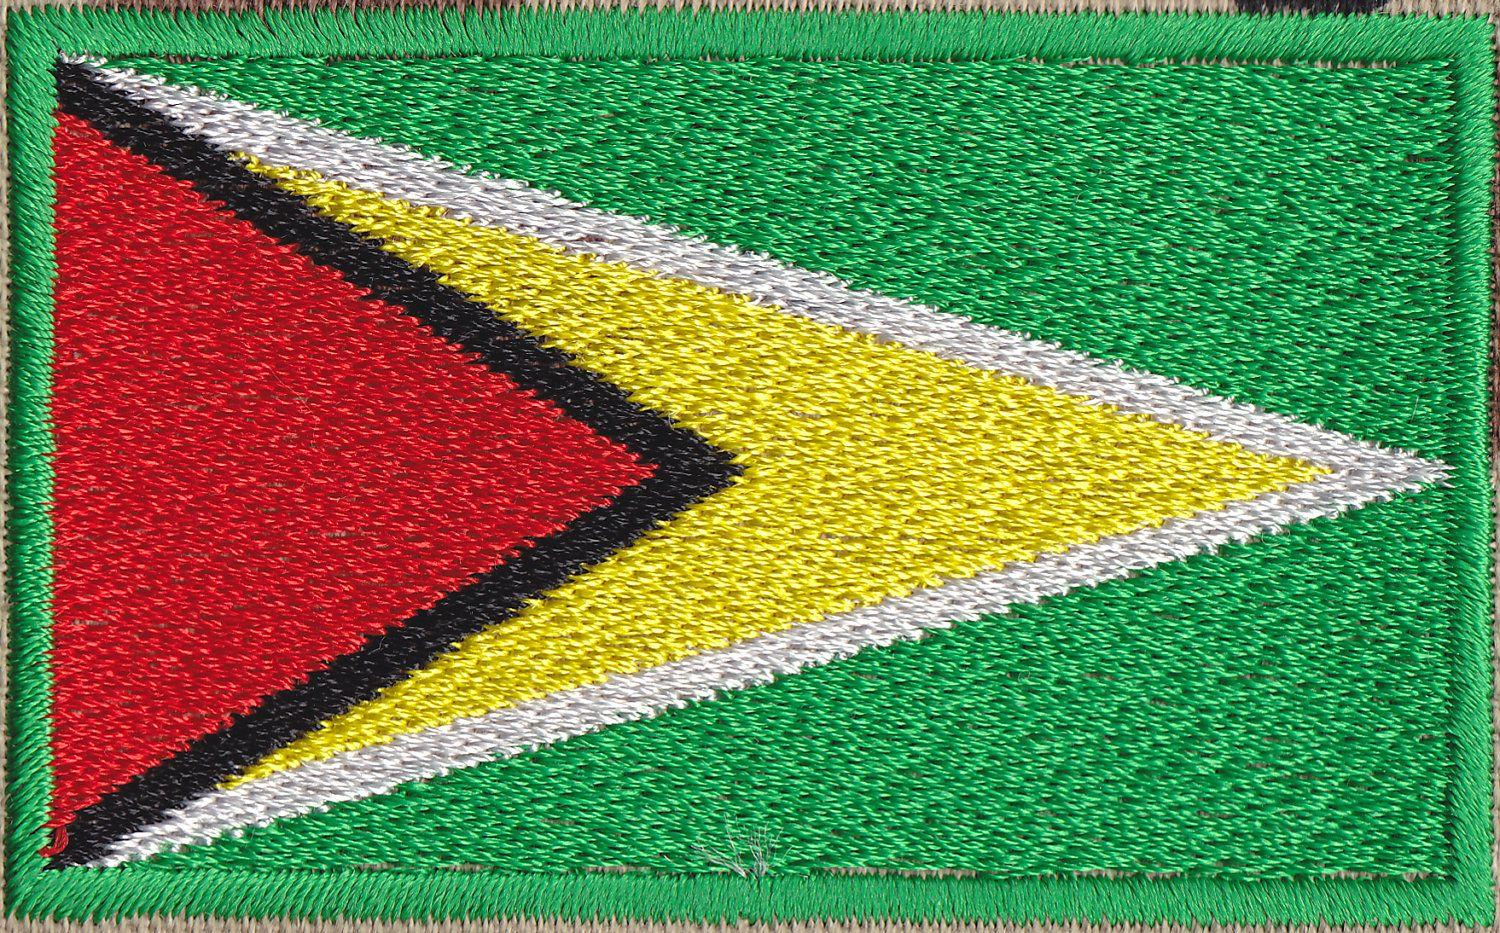 Graafix!: Flag of Guyana